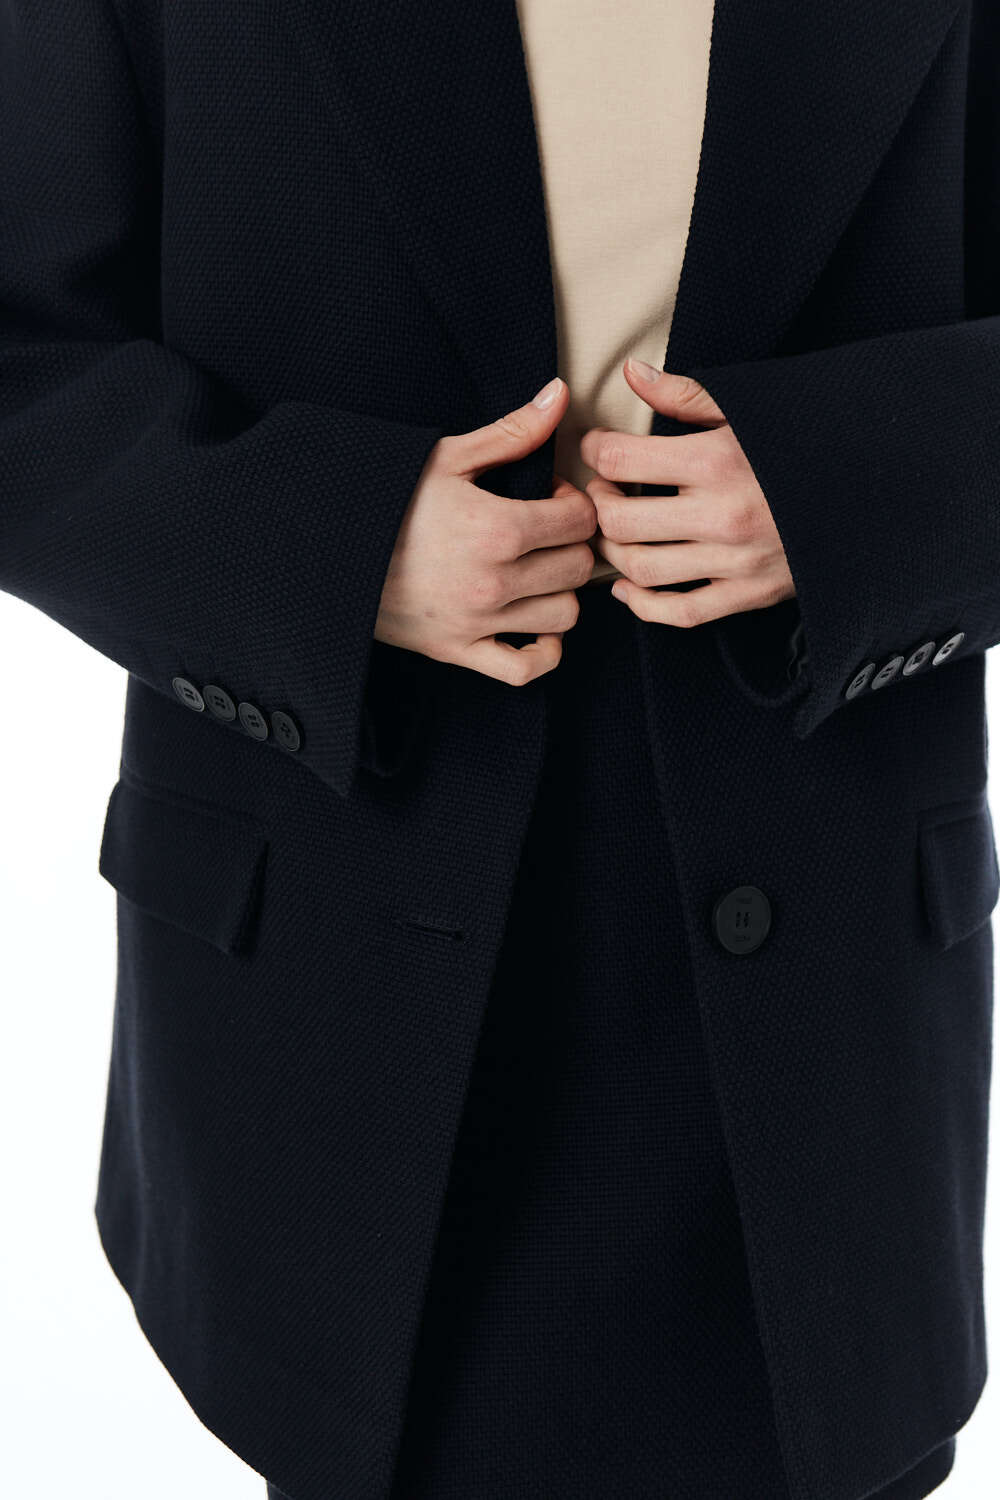 Пальто-пиджак женское, хлопковая шанель, черная рогожка